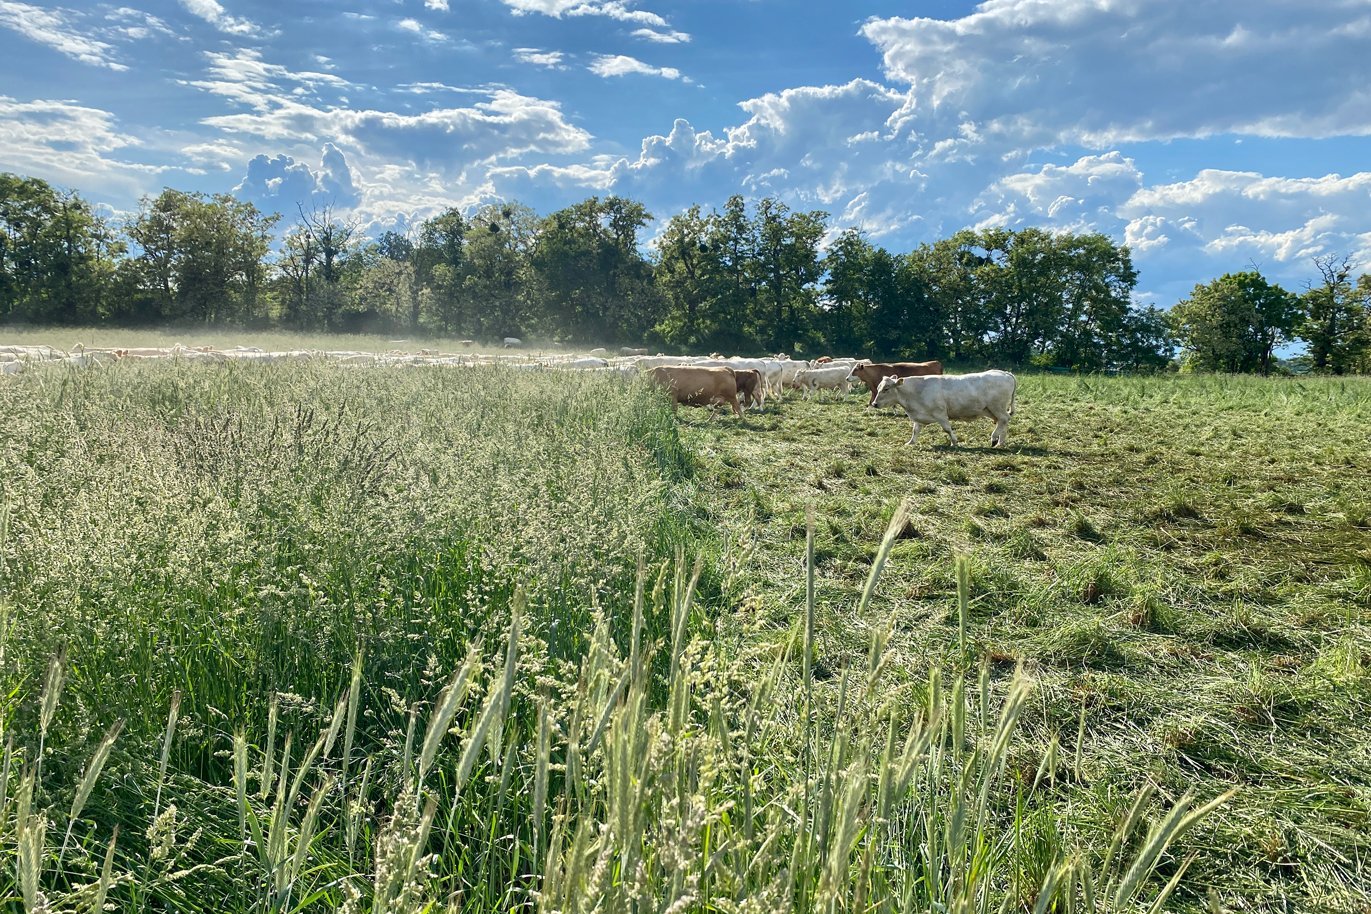 Im Hintergrund ist eine Rinderherde beim Mob Grazing zu sehen. Links im Bild ist das Gras noch ungefressen und hoch, rechts abgefressen und niedergetrampelt. Klick führt zu Großansicht in einer Lightbox. Zum Schließen der Lightbox ESC drücken.